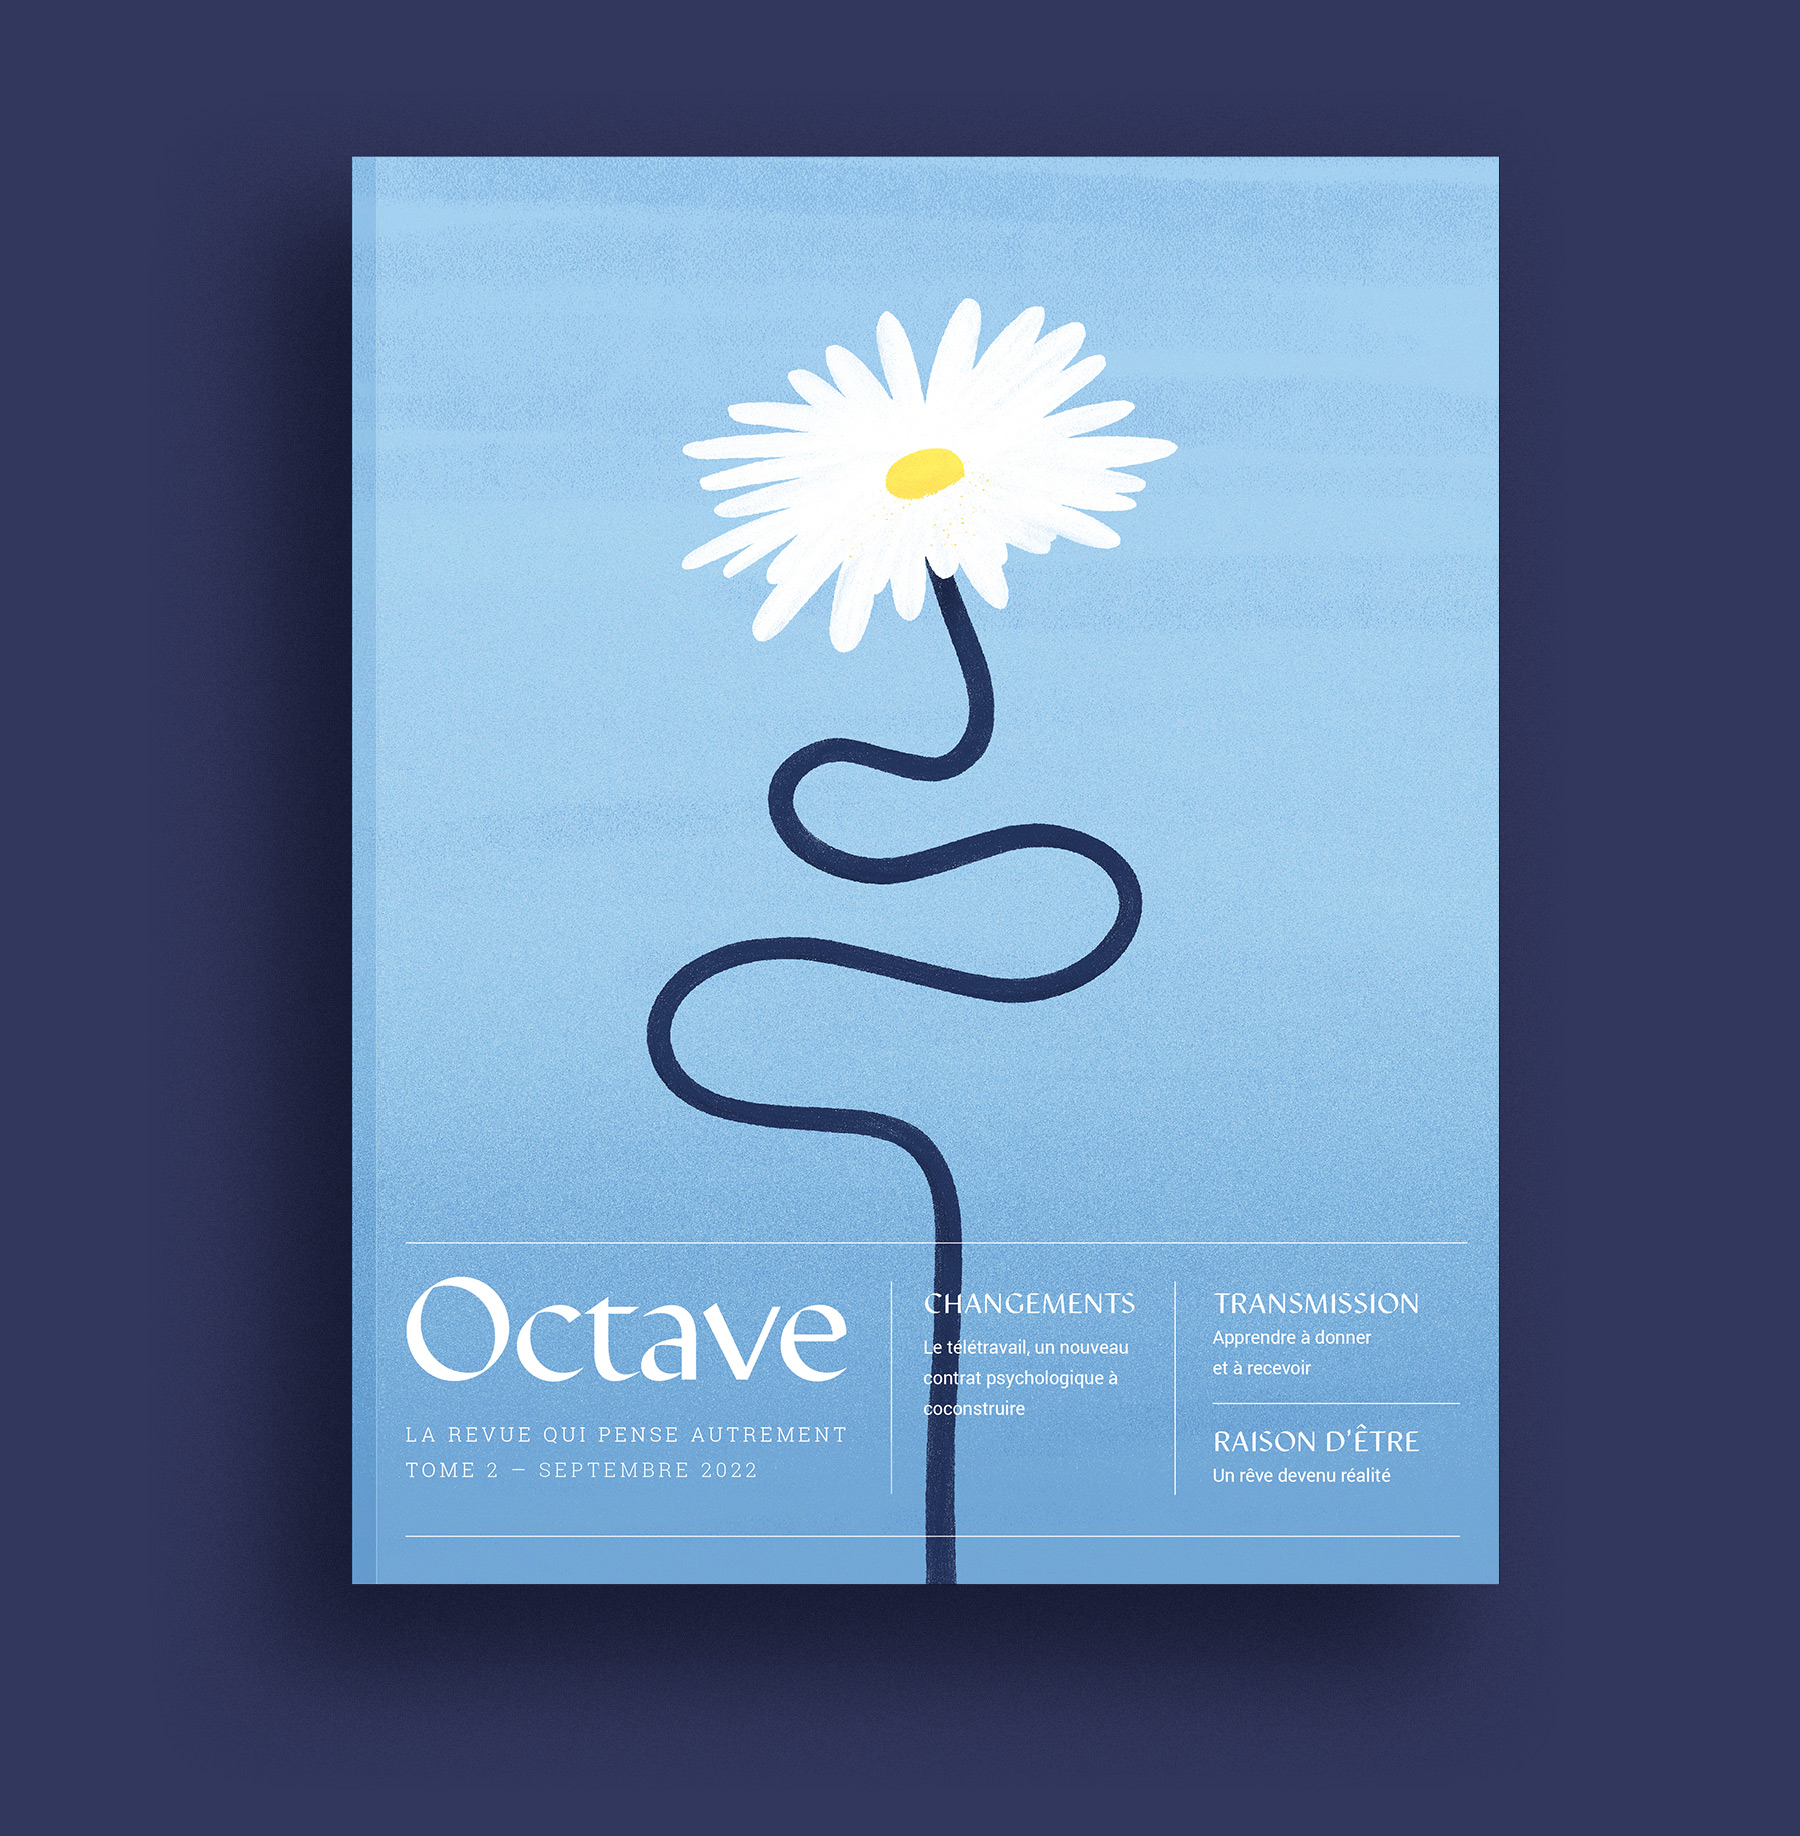 Couverture de la revue papier Octave : une fleur avec de grands pétales blancs et dont la tige présente des circonvolutions avant de s'épanouir vers le haut